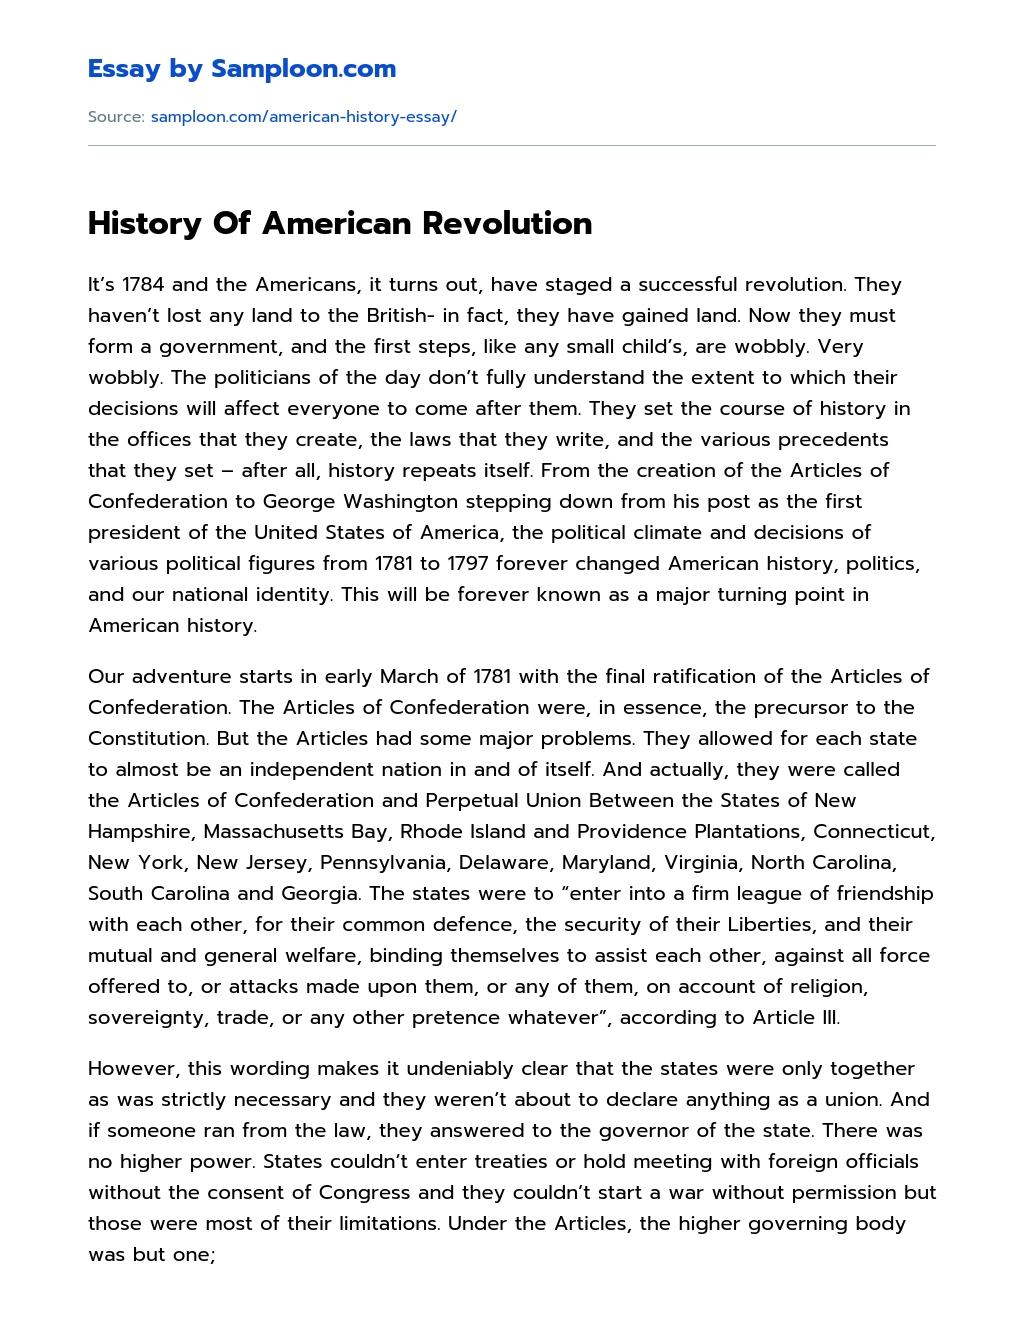 History Of American Revolution essay